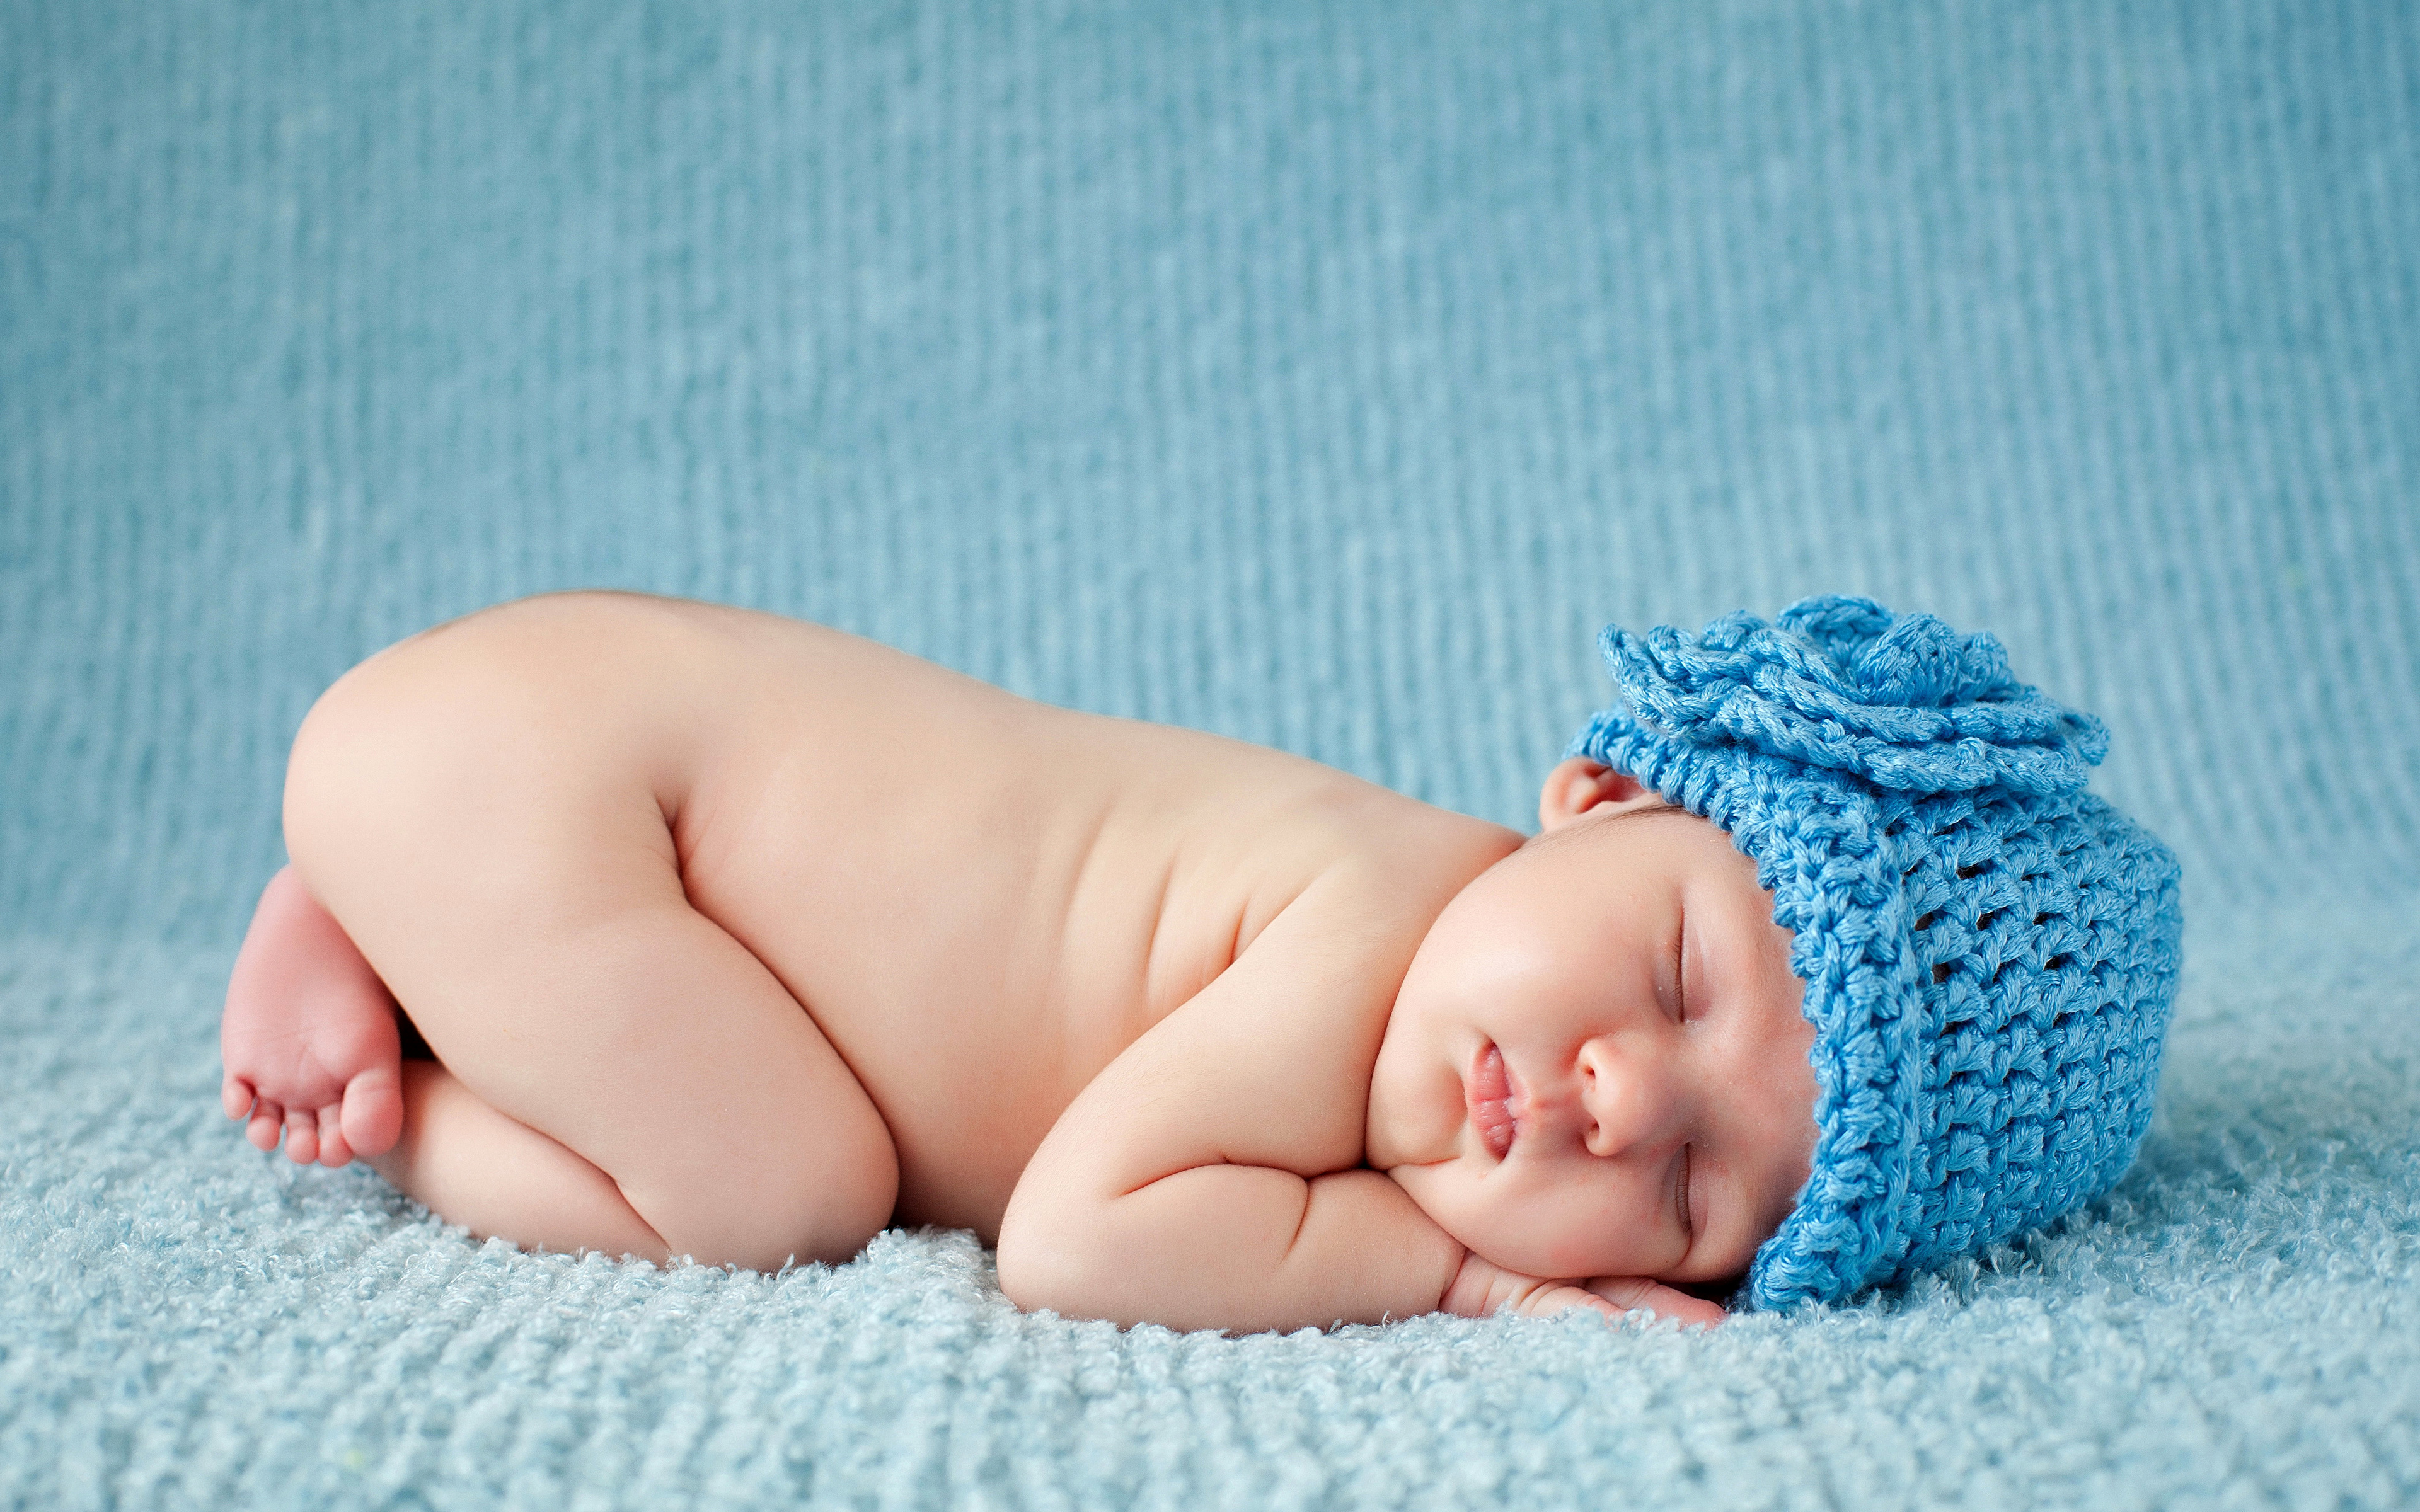 Фотография грудной ребёнок Дети Шапки спящий 3840x2400 Младенцы младенец младенца ребёнок сон Спит спят шапка в шапке